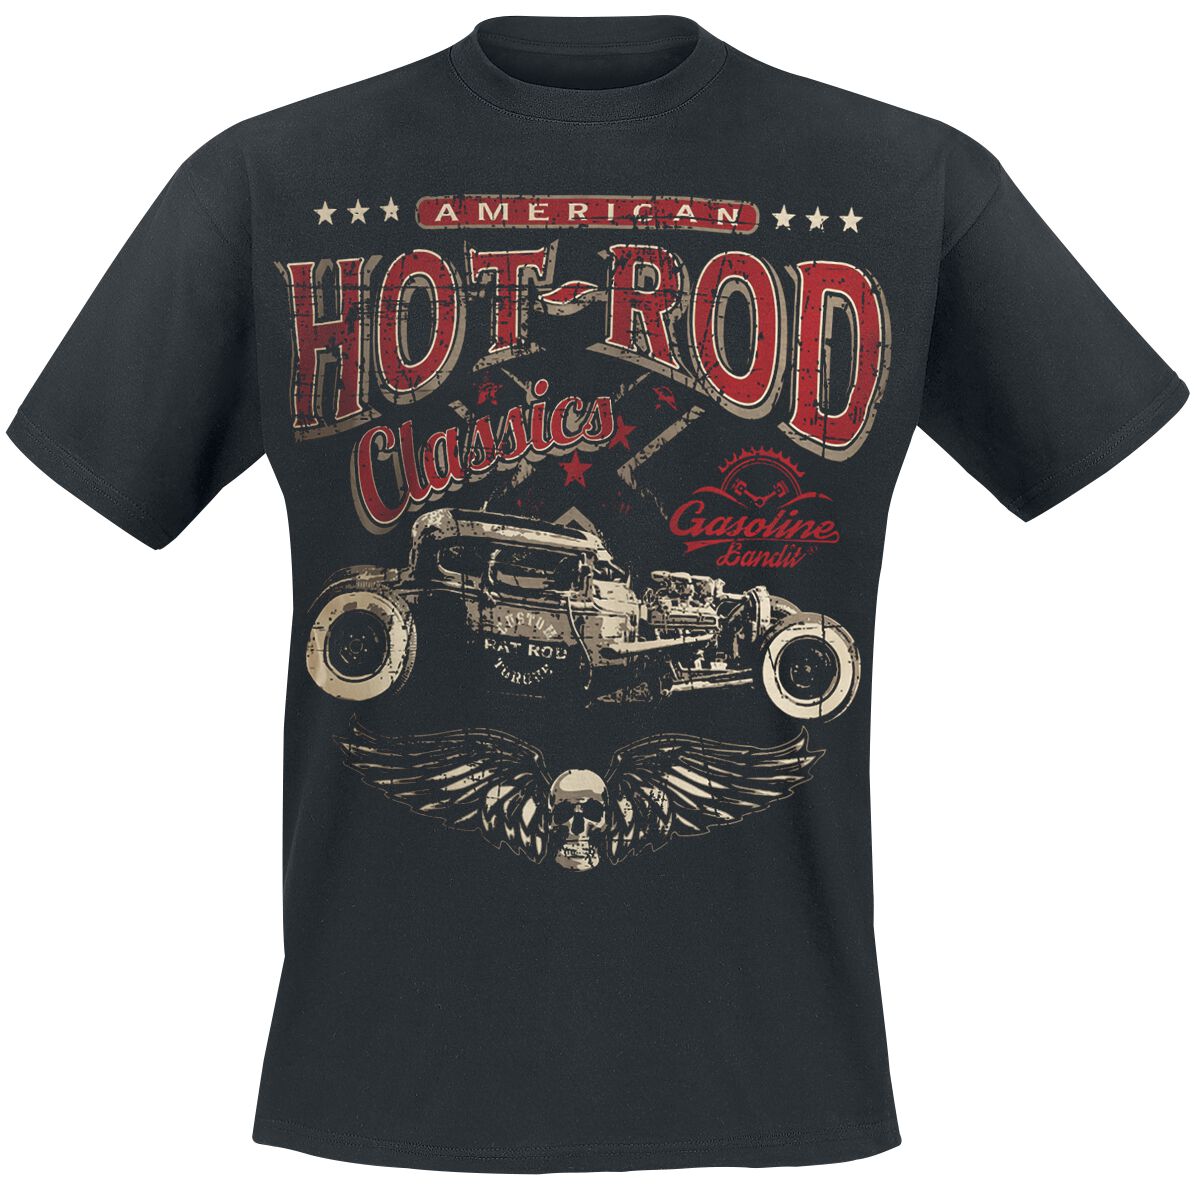 Gasoline Bandit - Rockabilly T-Shirt - Hot Rod Classics - S bis 3XL - für Männer - Größe XL - schwarz